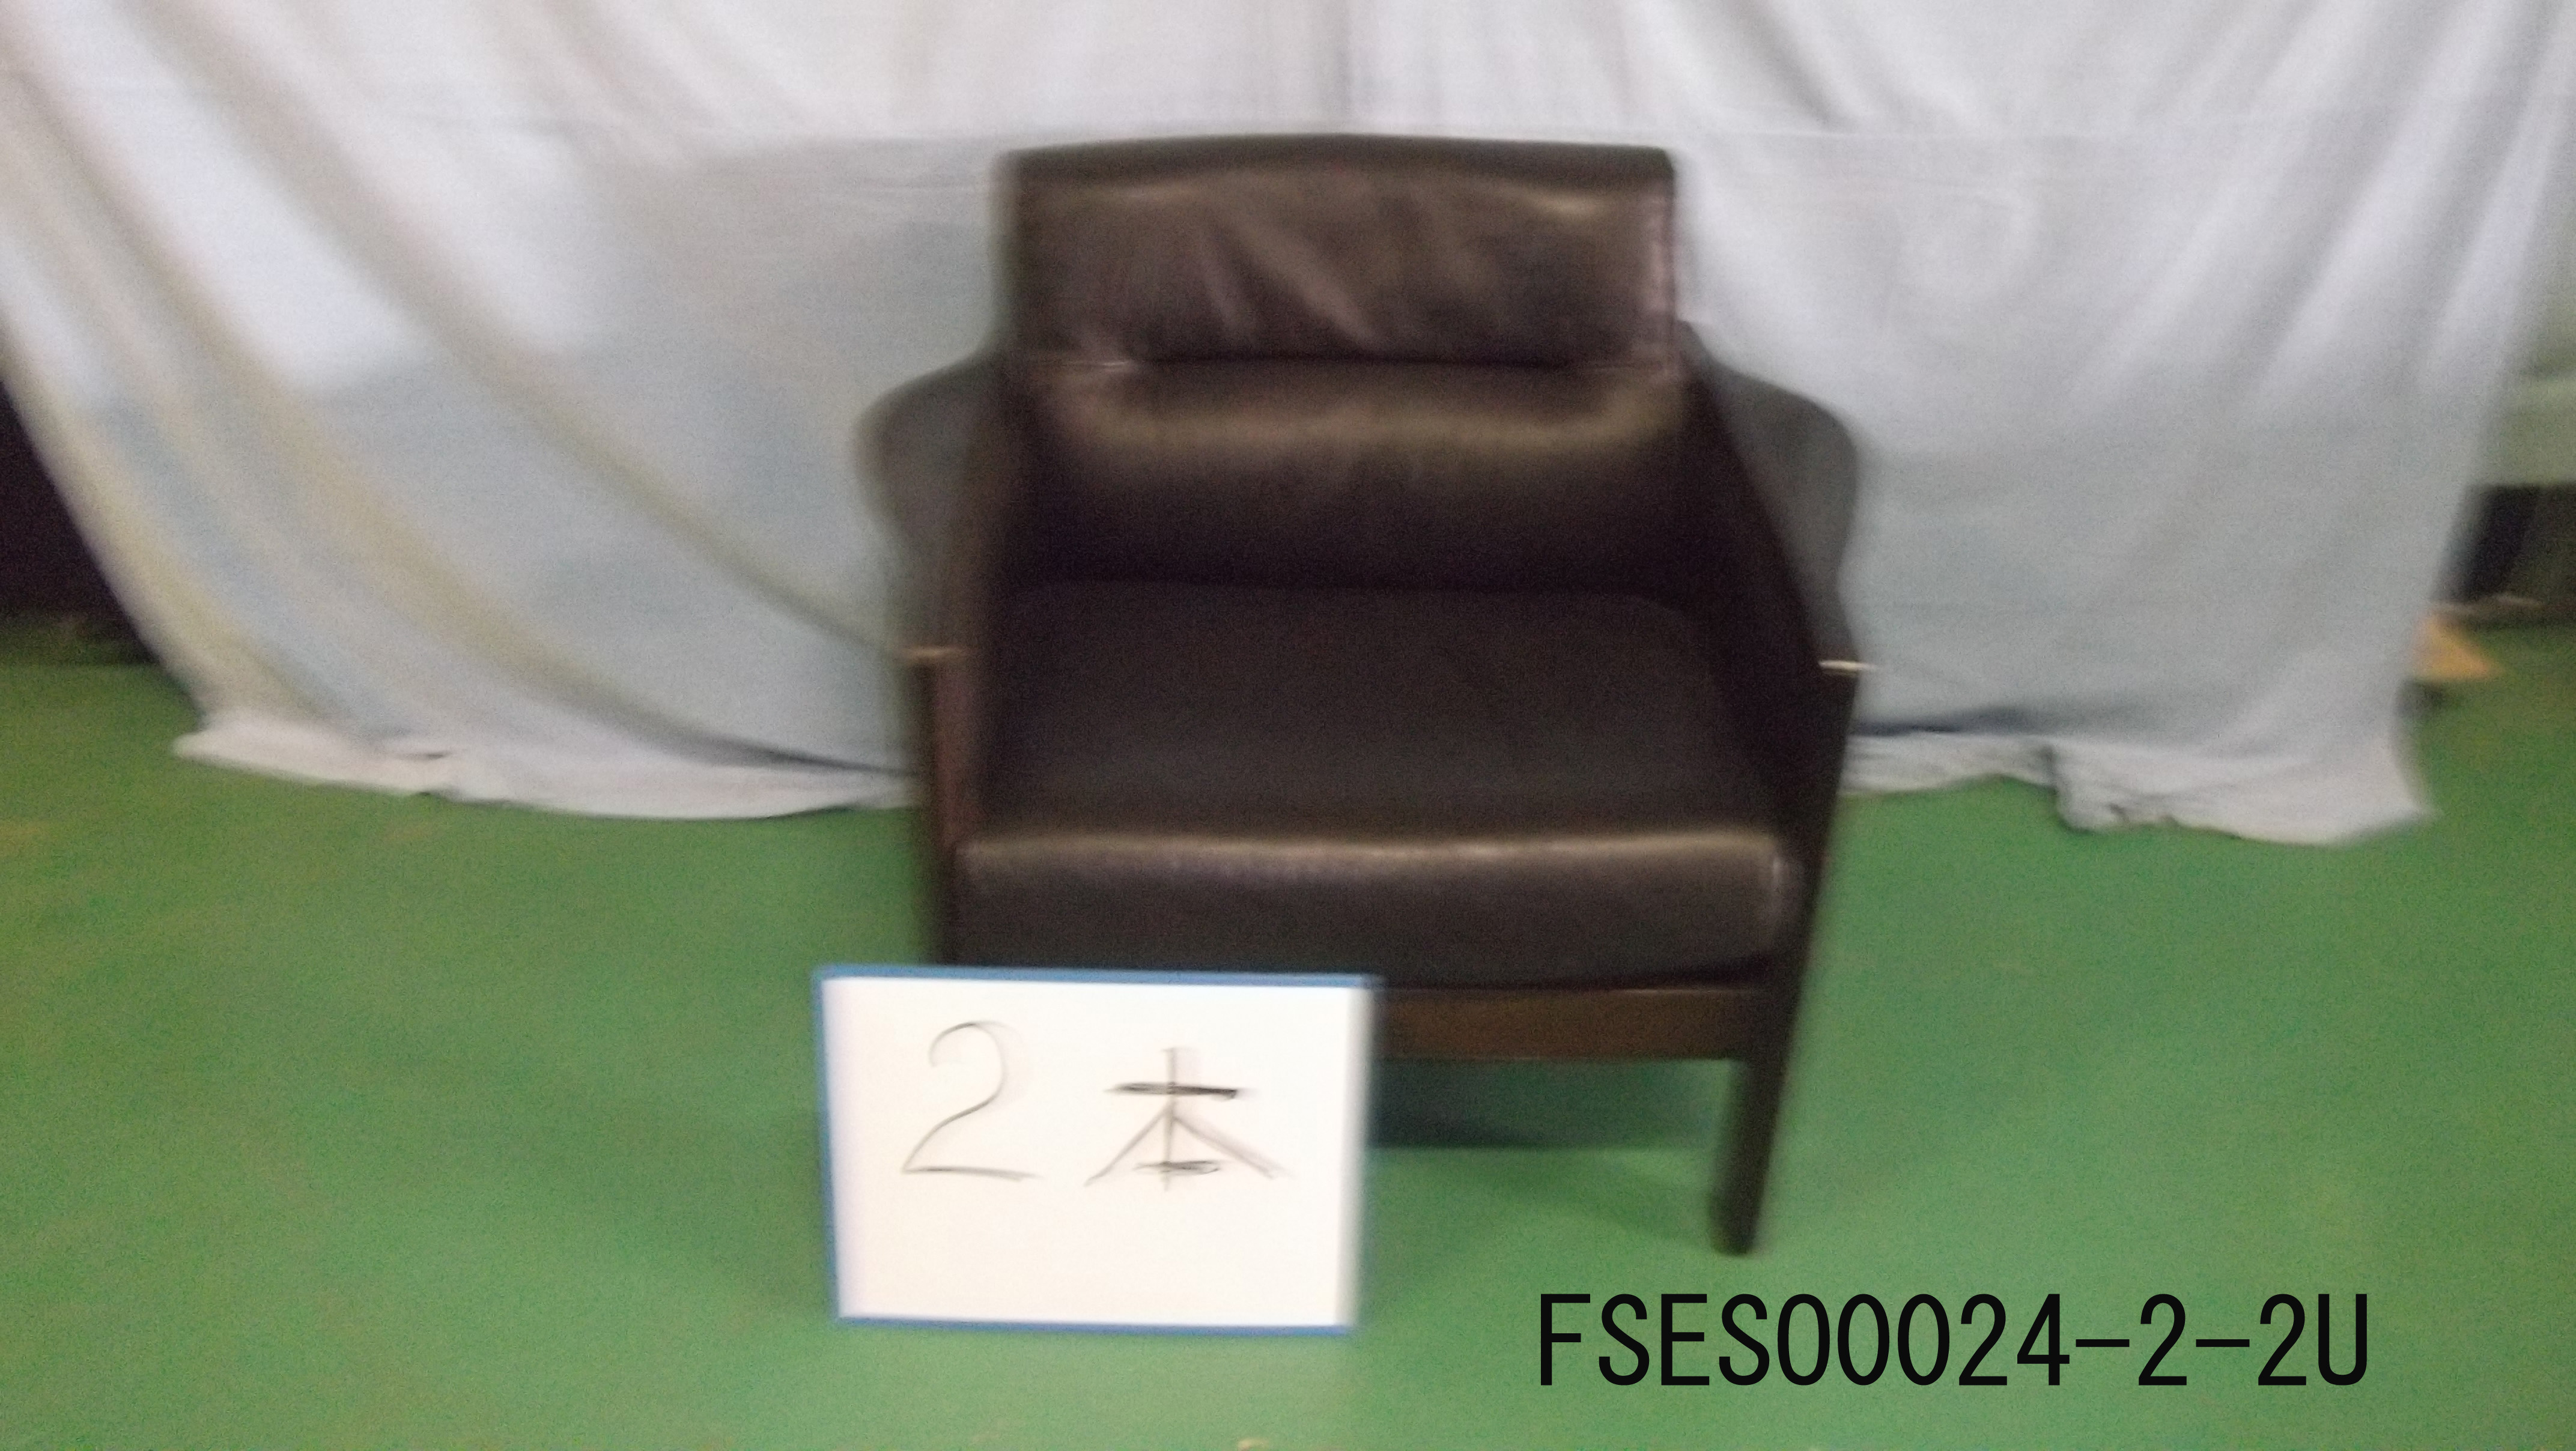 FSESO0024-2